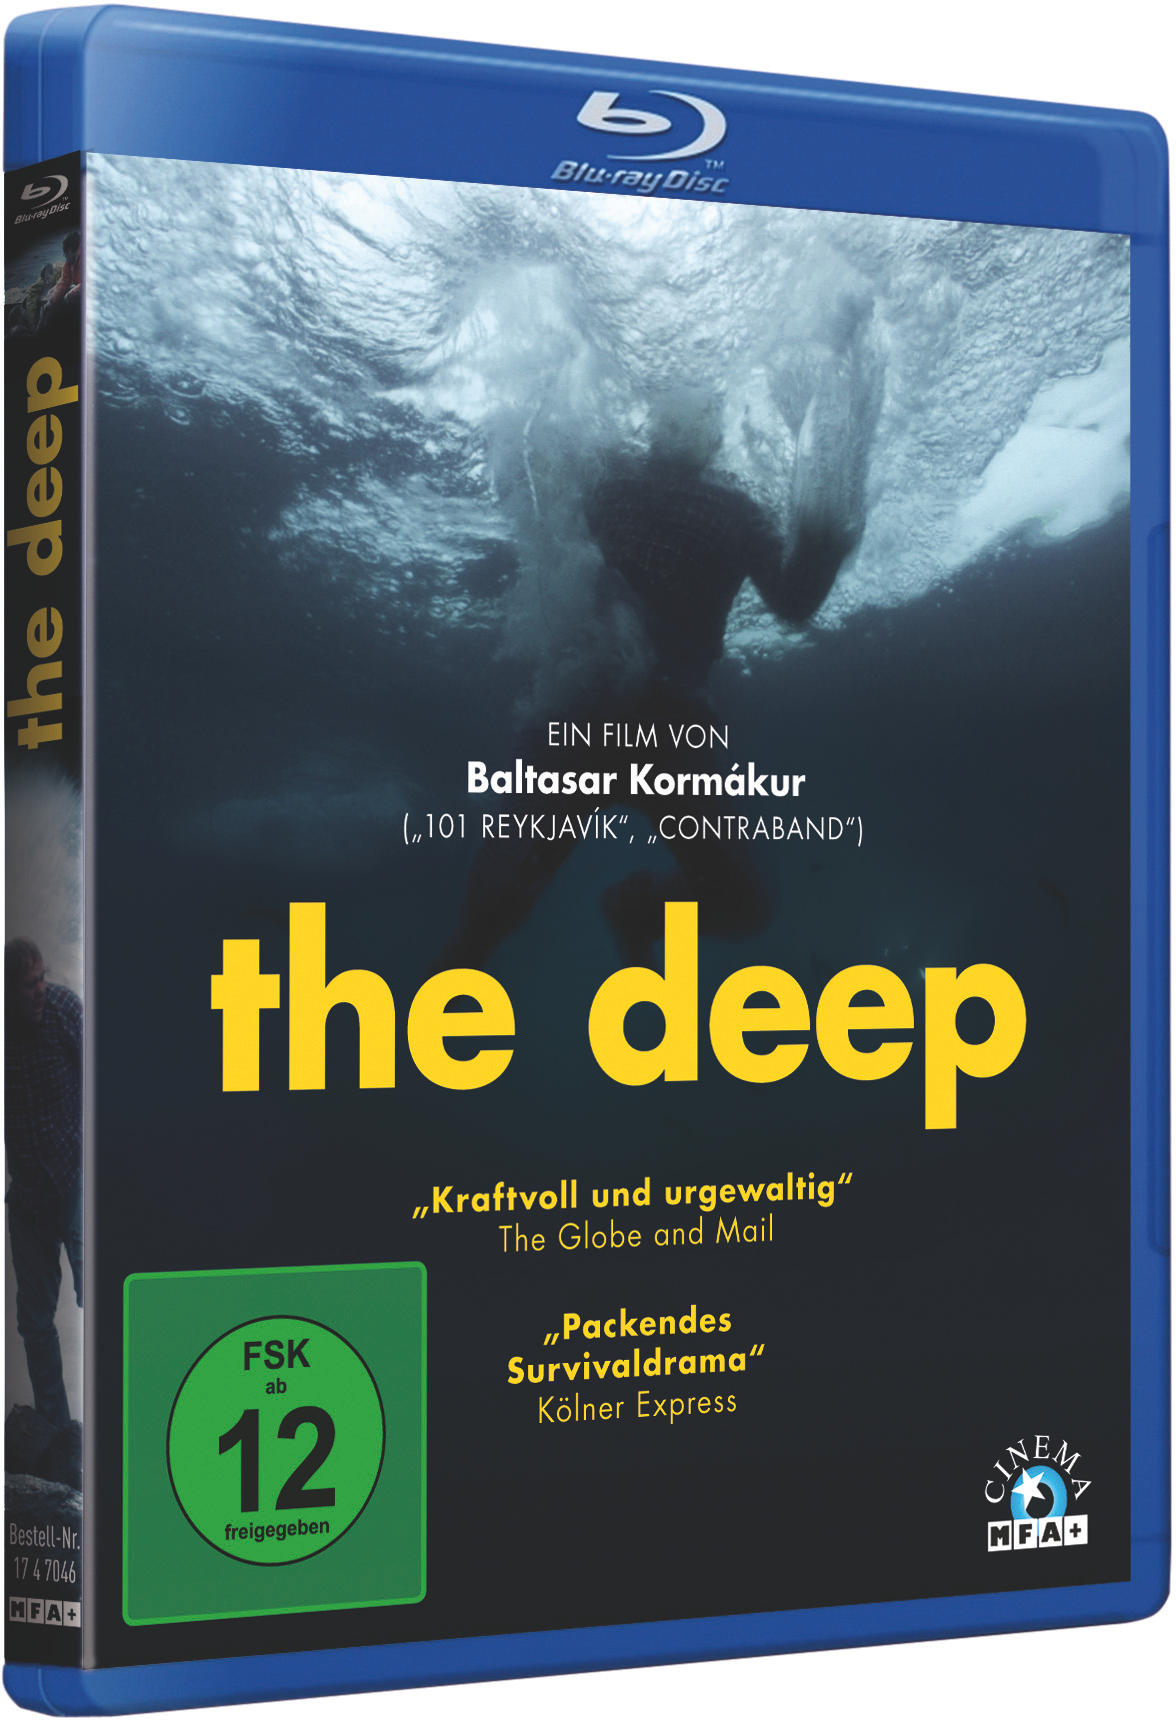 The Blu-ray Deep